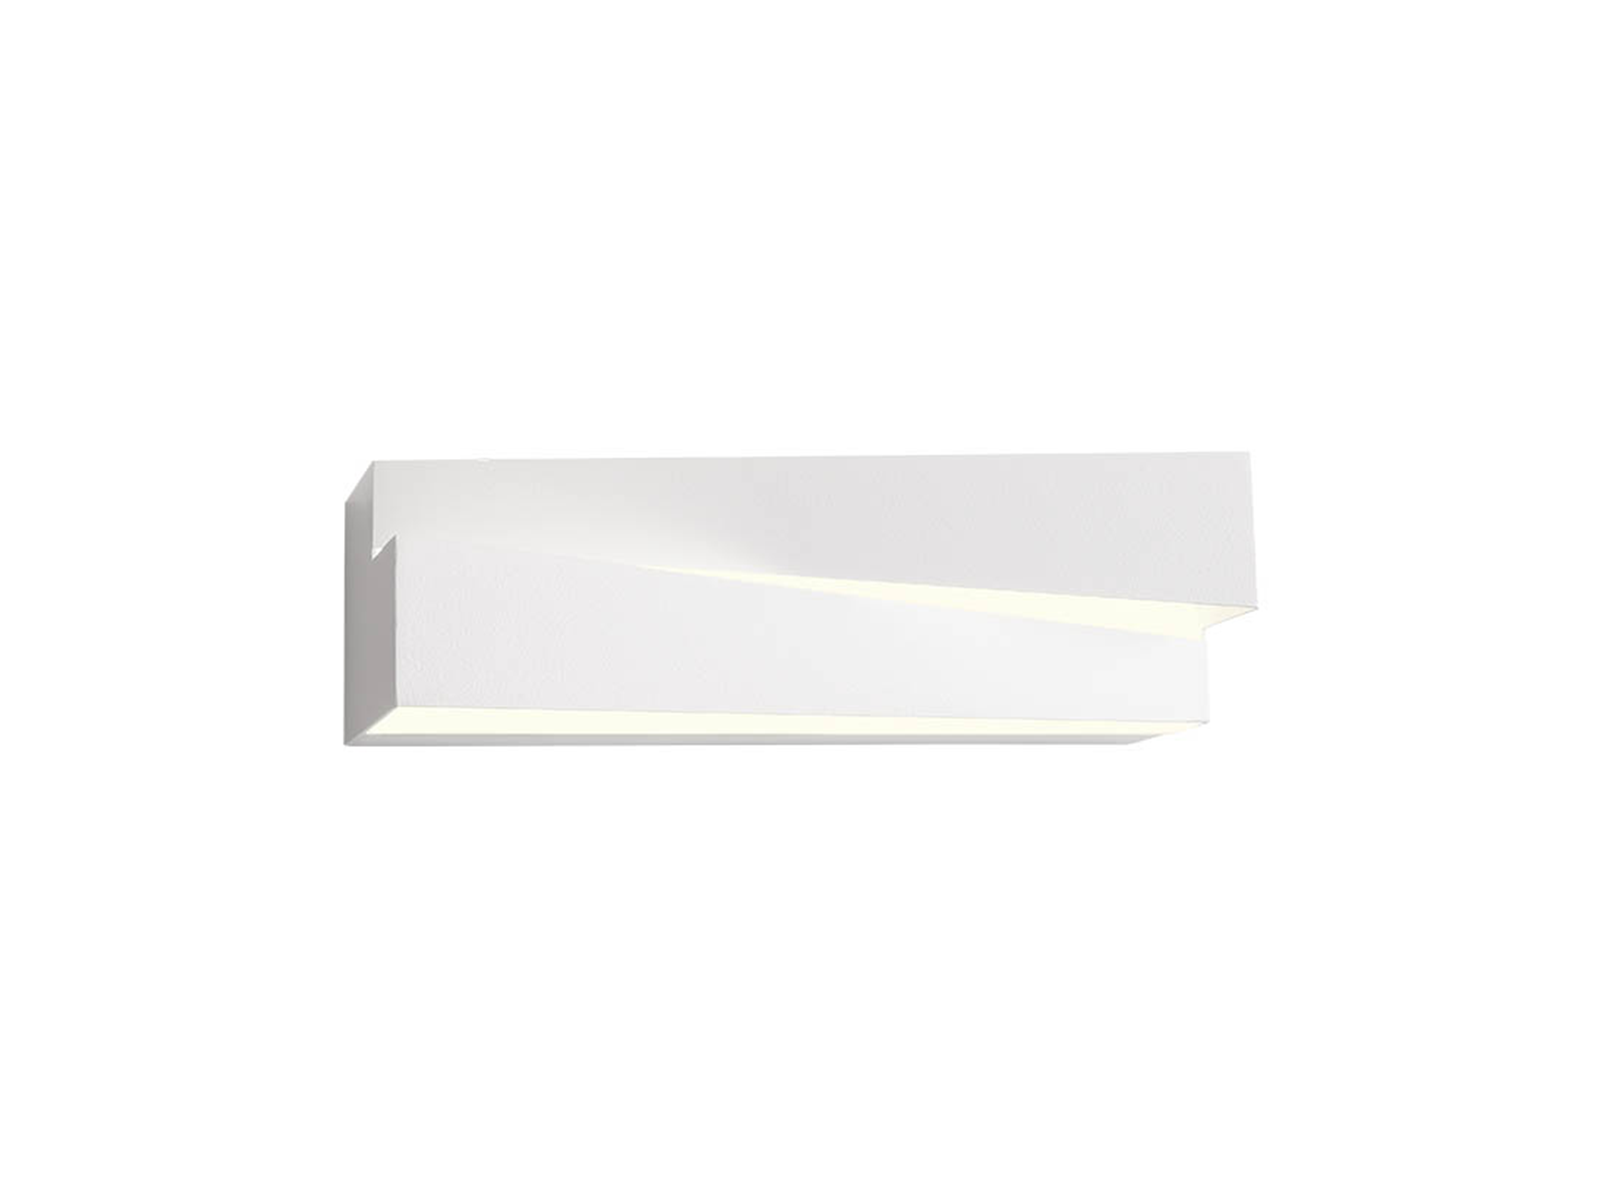 Nástěnné LED svítidlo Zigo pískově bílé, 9W, 3000K, 20cm